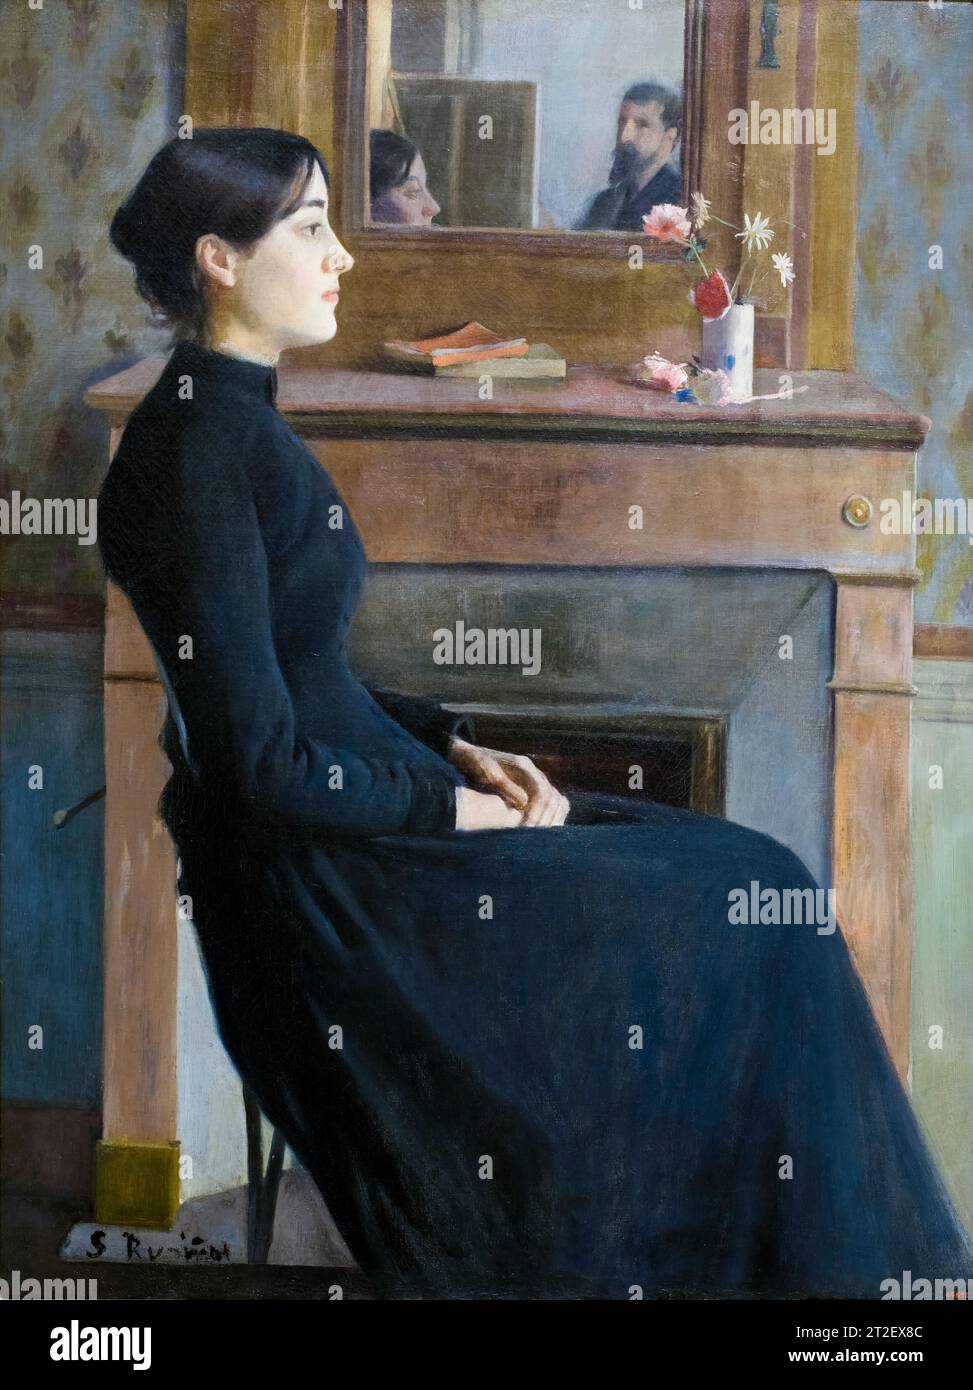 Peinture portrait Santiago Rusinol, Figure féminine, huile sur toile, 1894 Banque D'Images